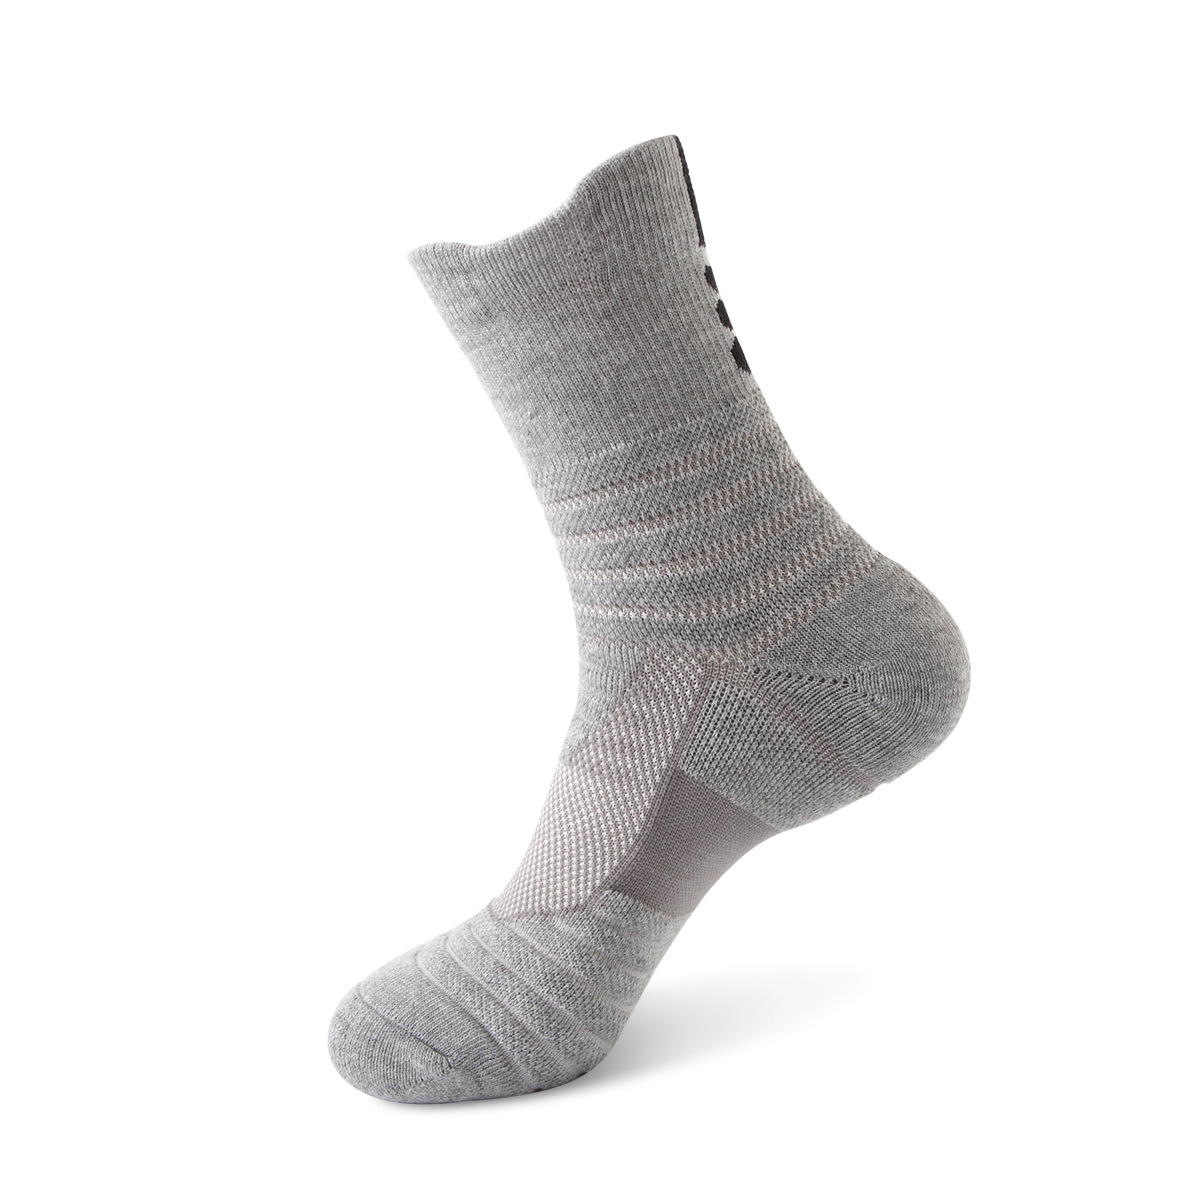 Elite Socks Basketball Socks Men's Thick Socks Towel Bottom Deodorant Quick-Drying Socks for Running Outdoor Sports Socks